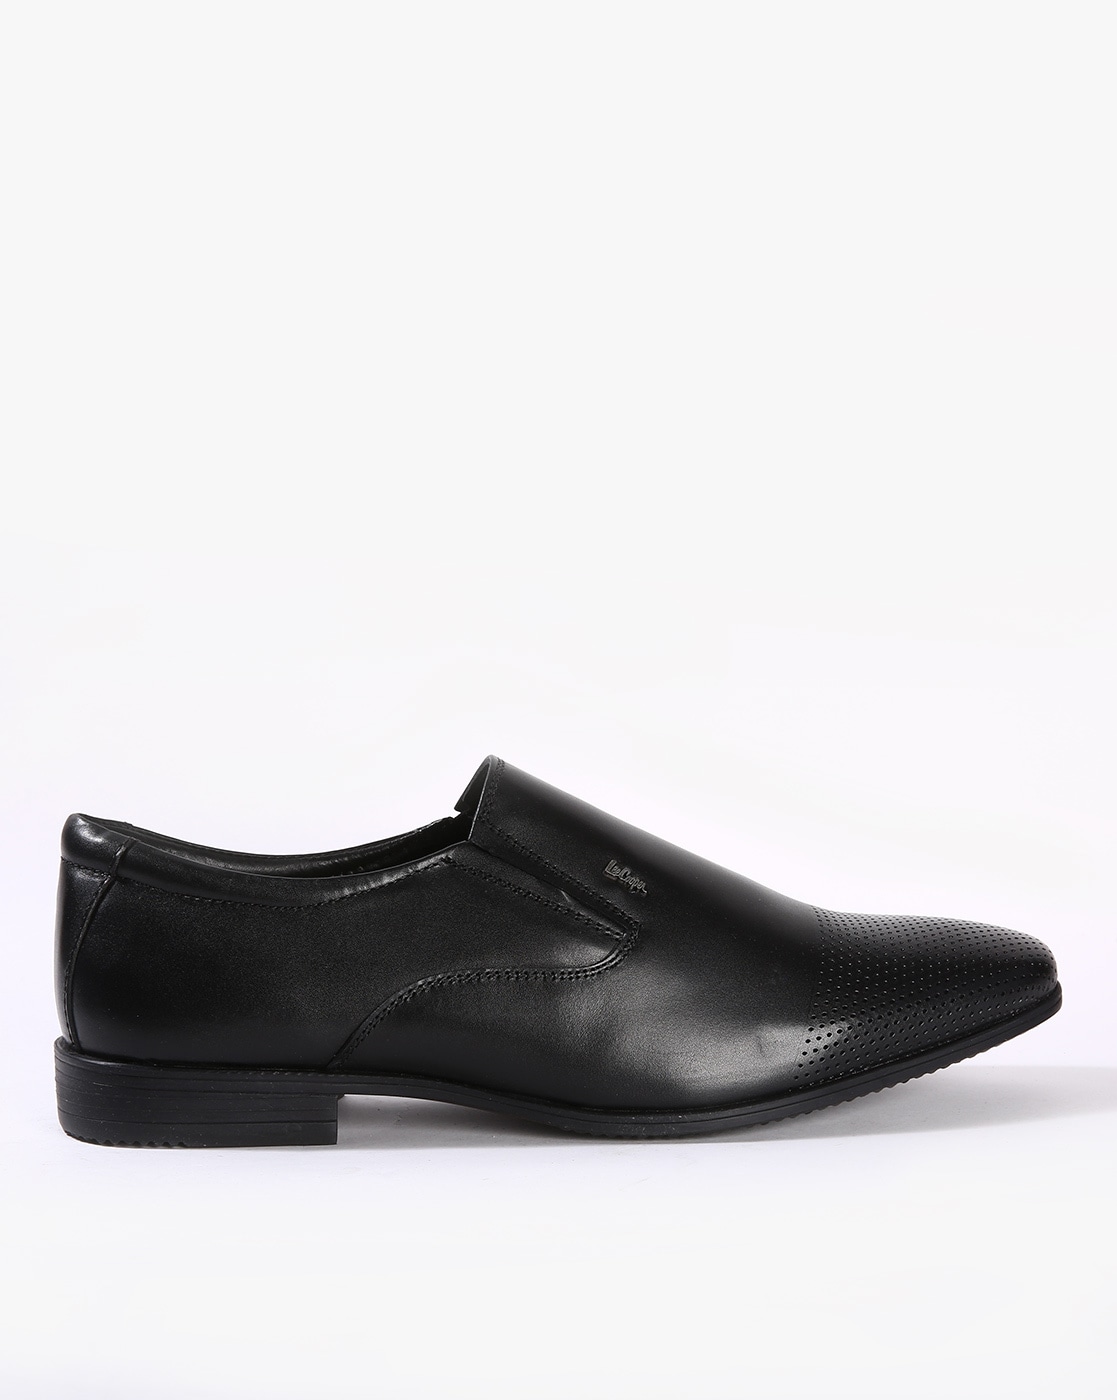 lee cooper slip on formal shoes